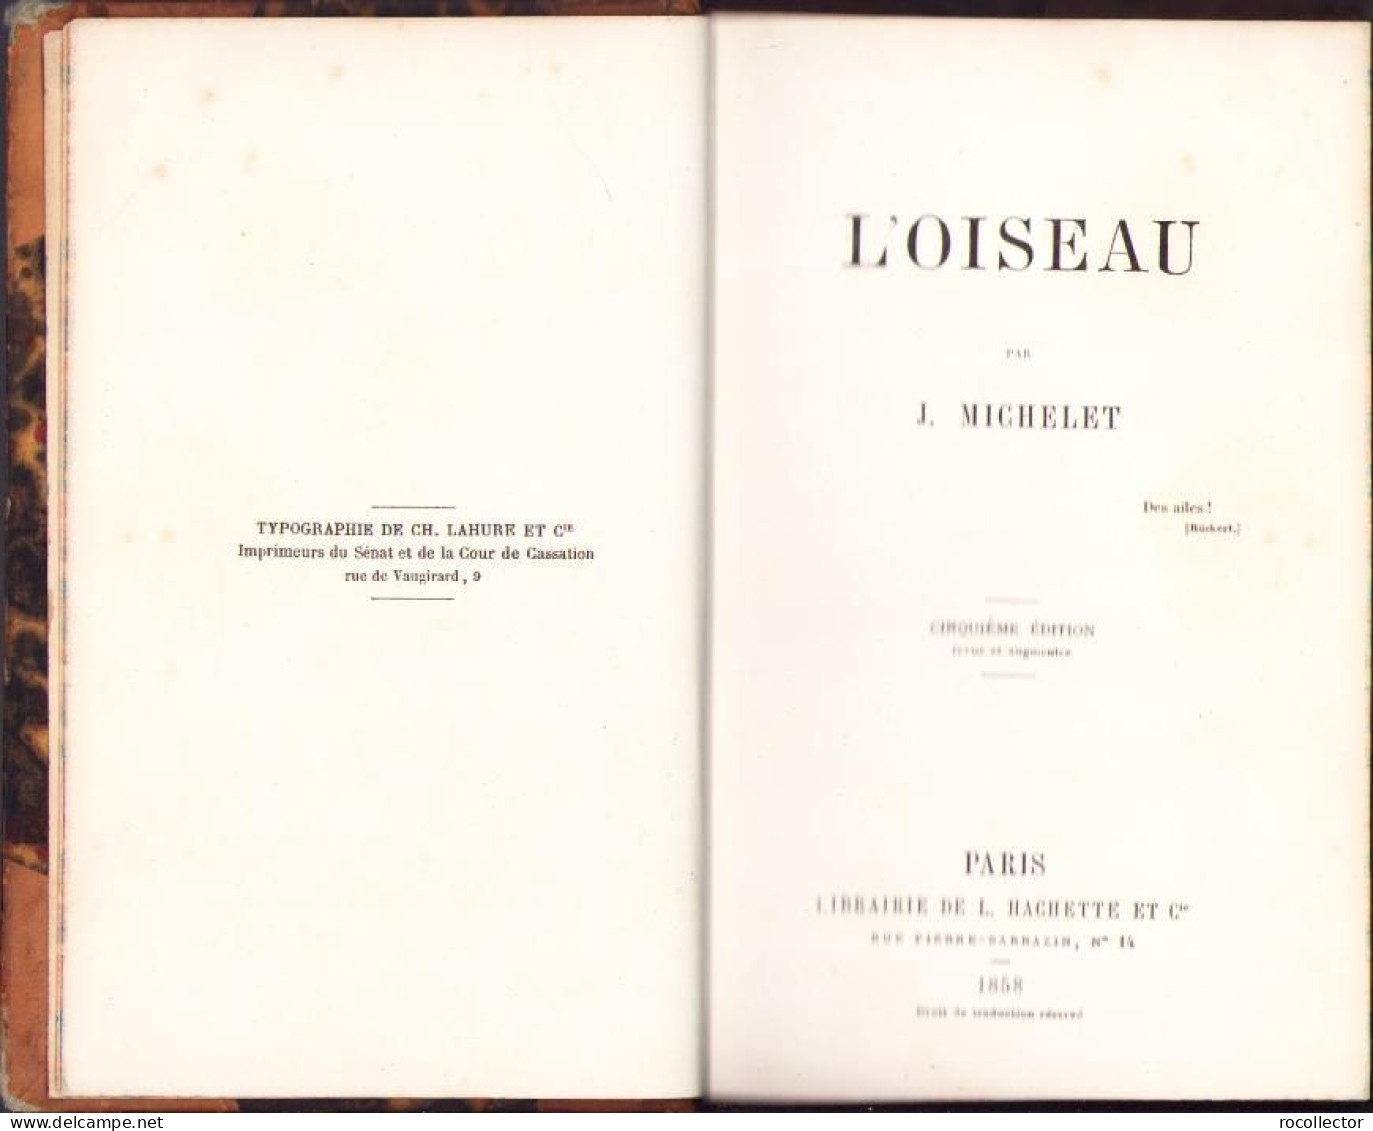 L’oiseau Par J. Michelet, 1858, Paris C2164 - Livres Anciens